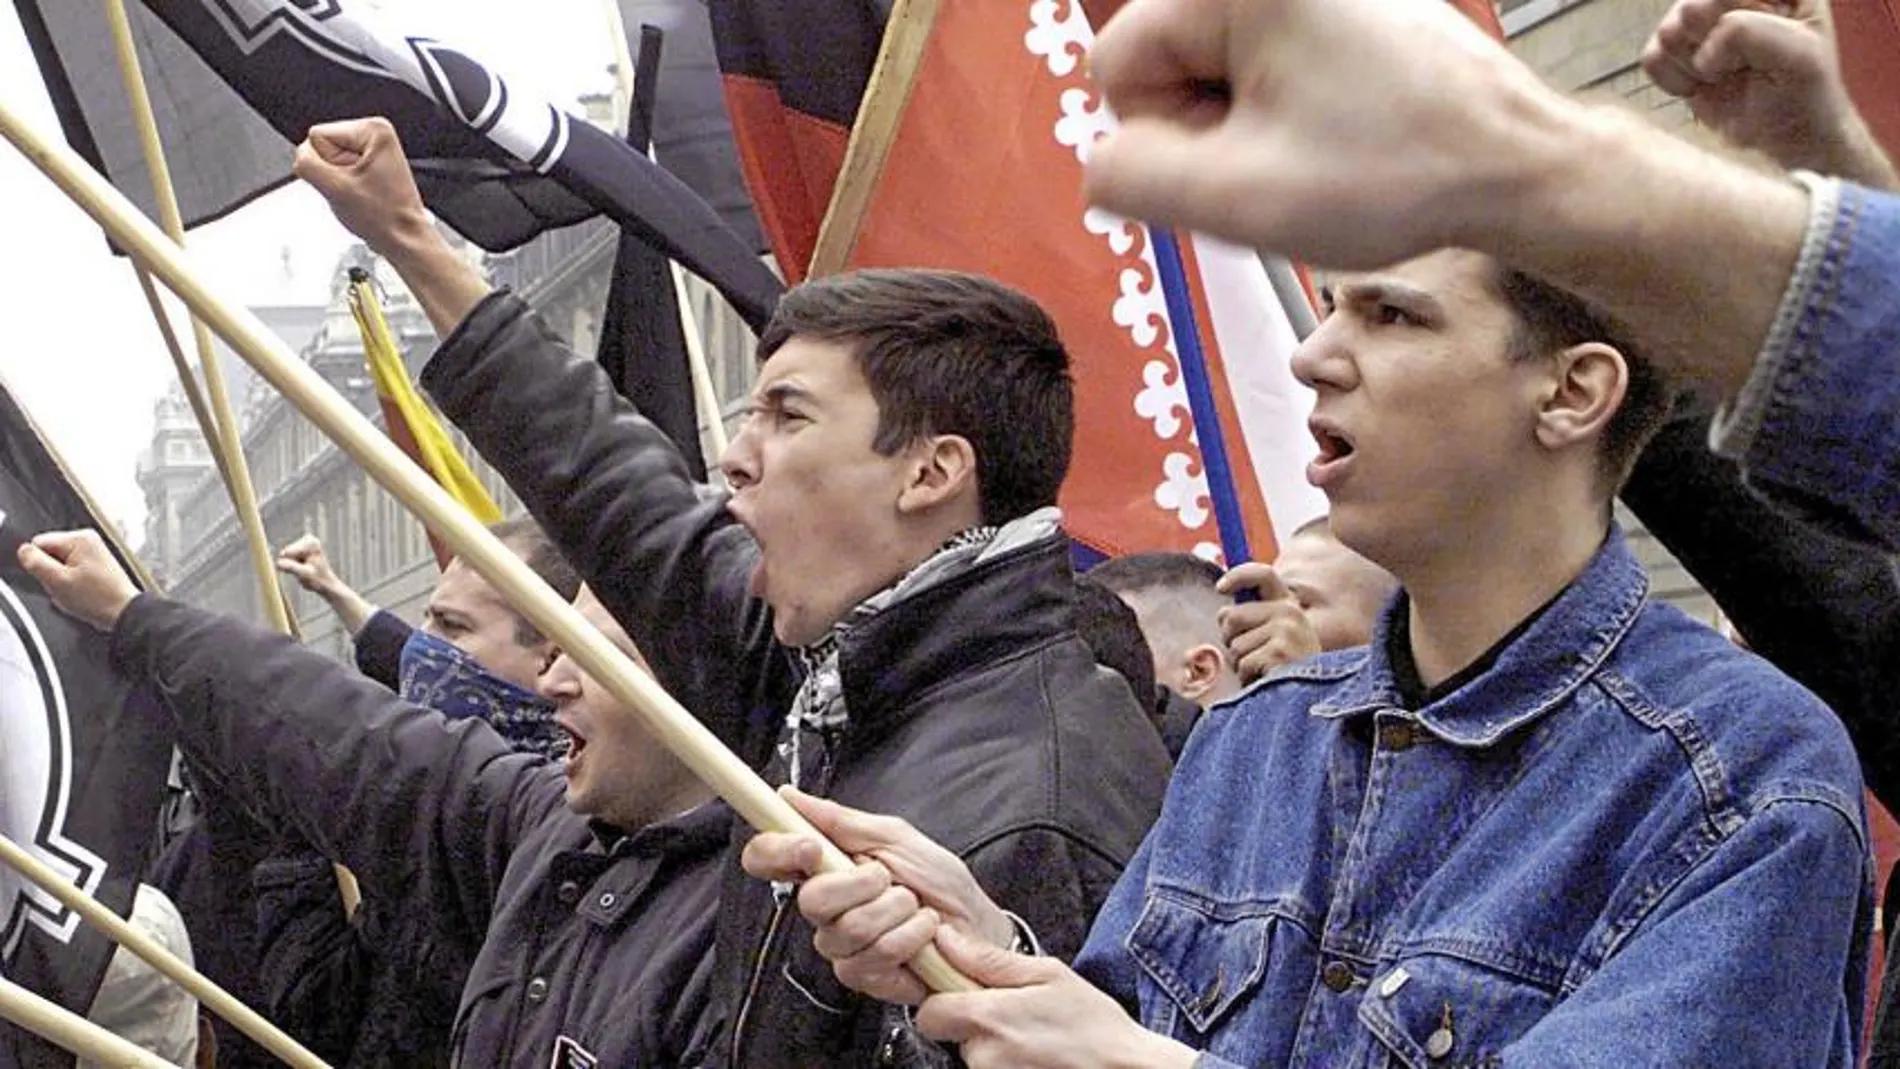 Un grupo de ultraderecha lanza consignas contra miembros del Frente Nacional en París en una imagen de archivo